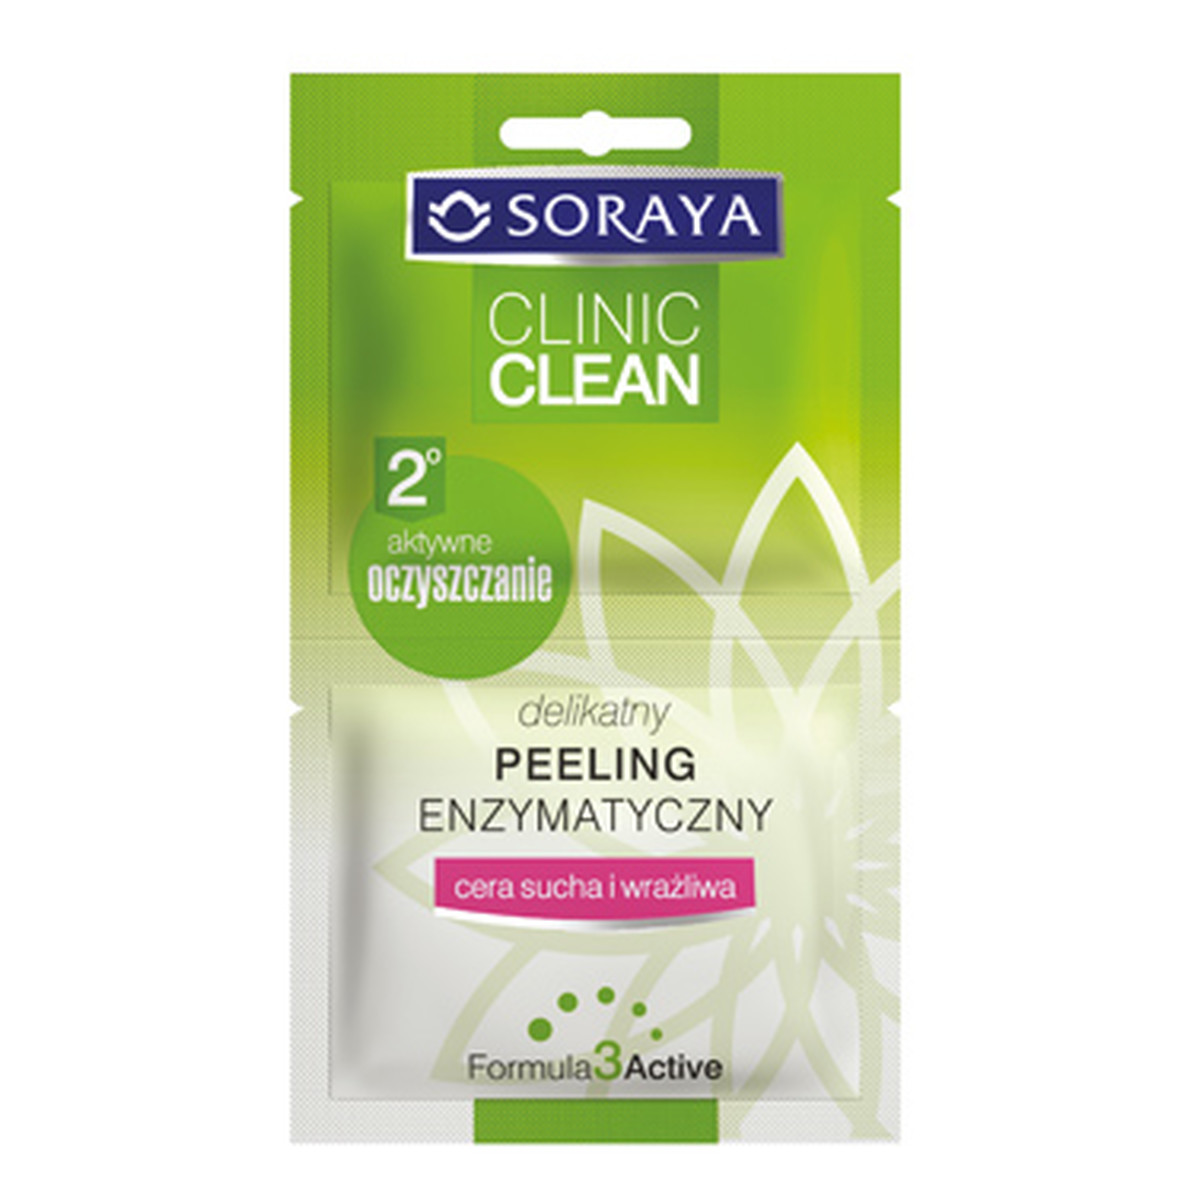 Soraya Clinic Clean Delikatny Peeling Enzymatyczny 10ml